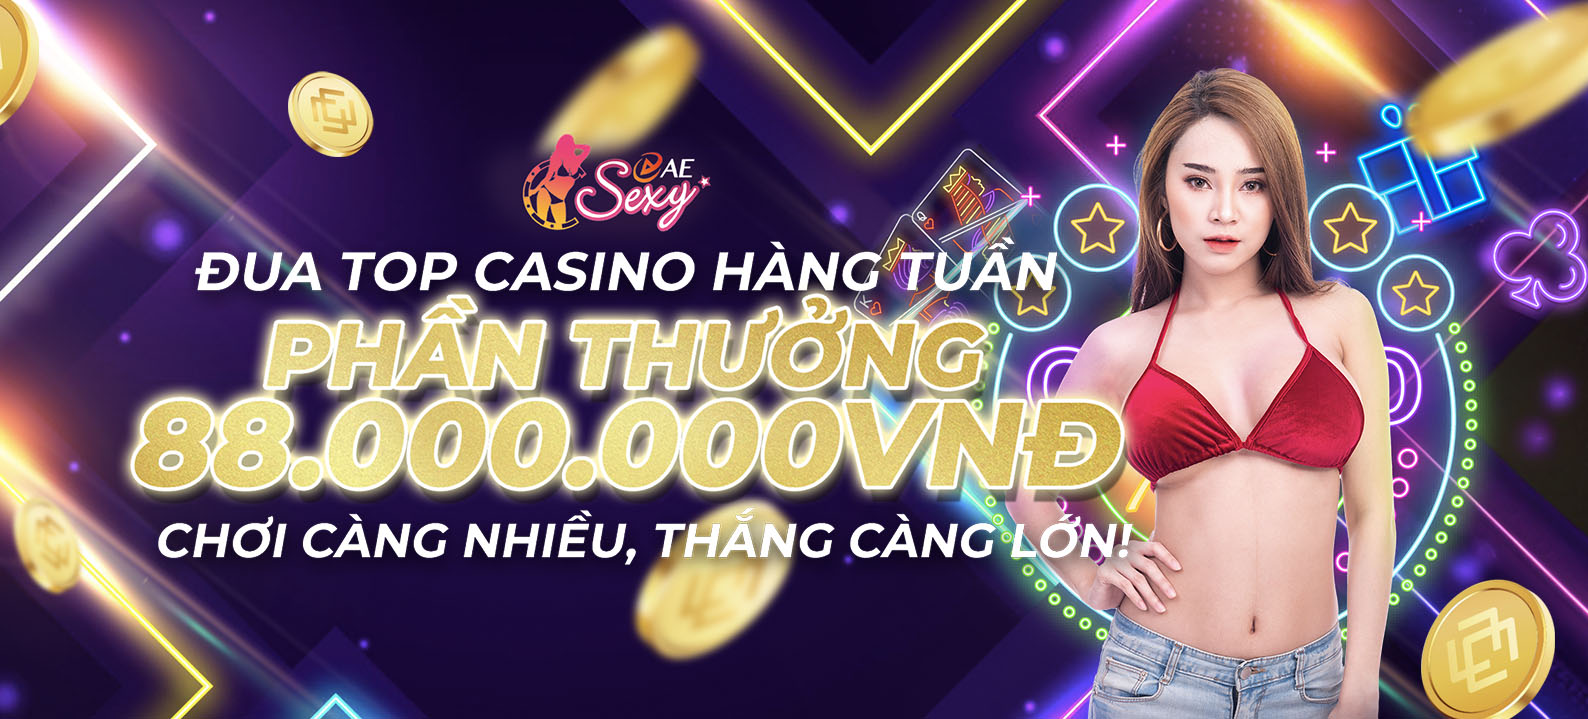 Đua Top Casino Sexy Hàng Tuần